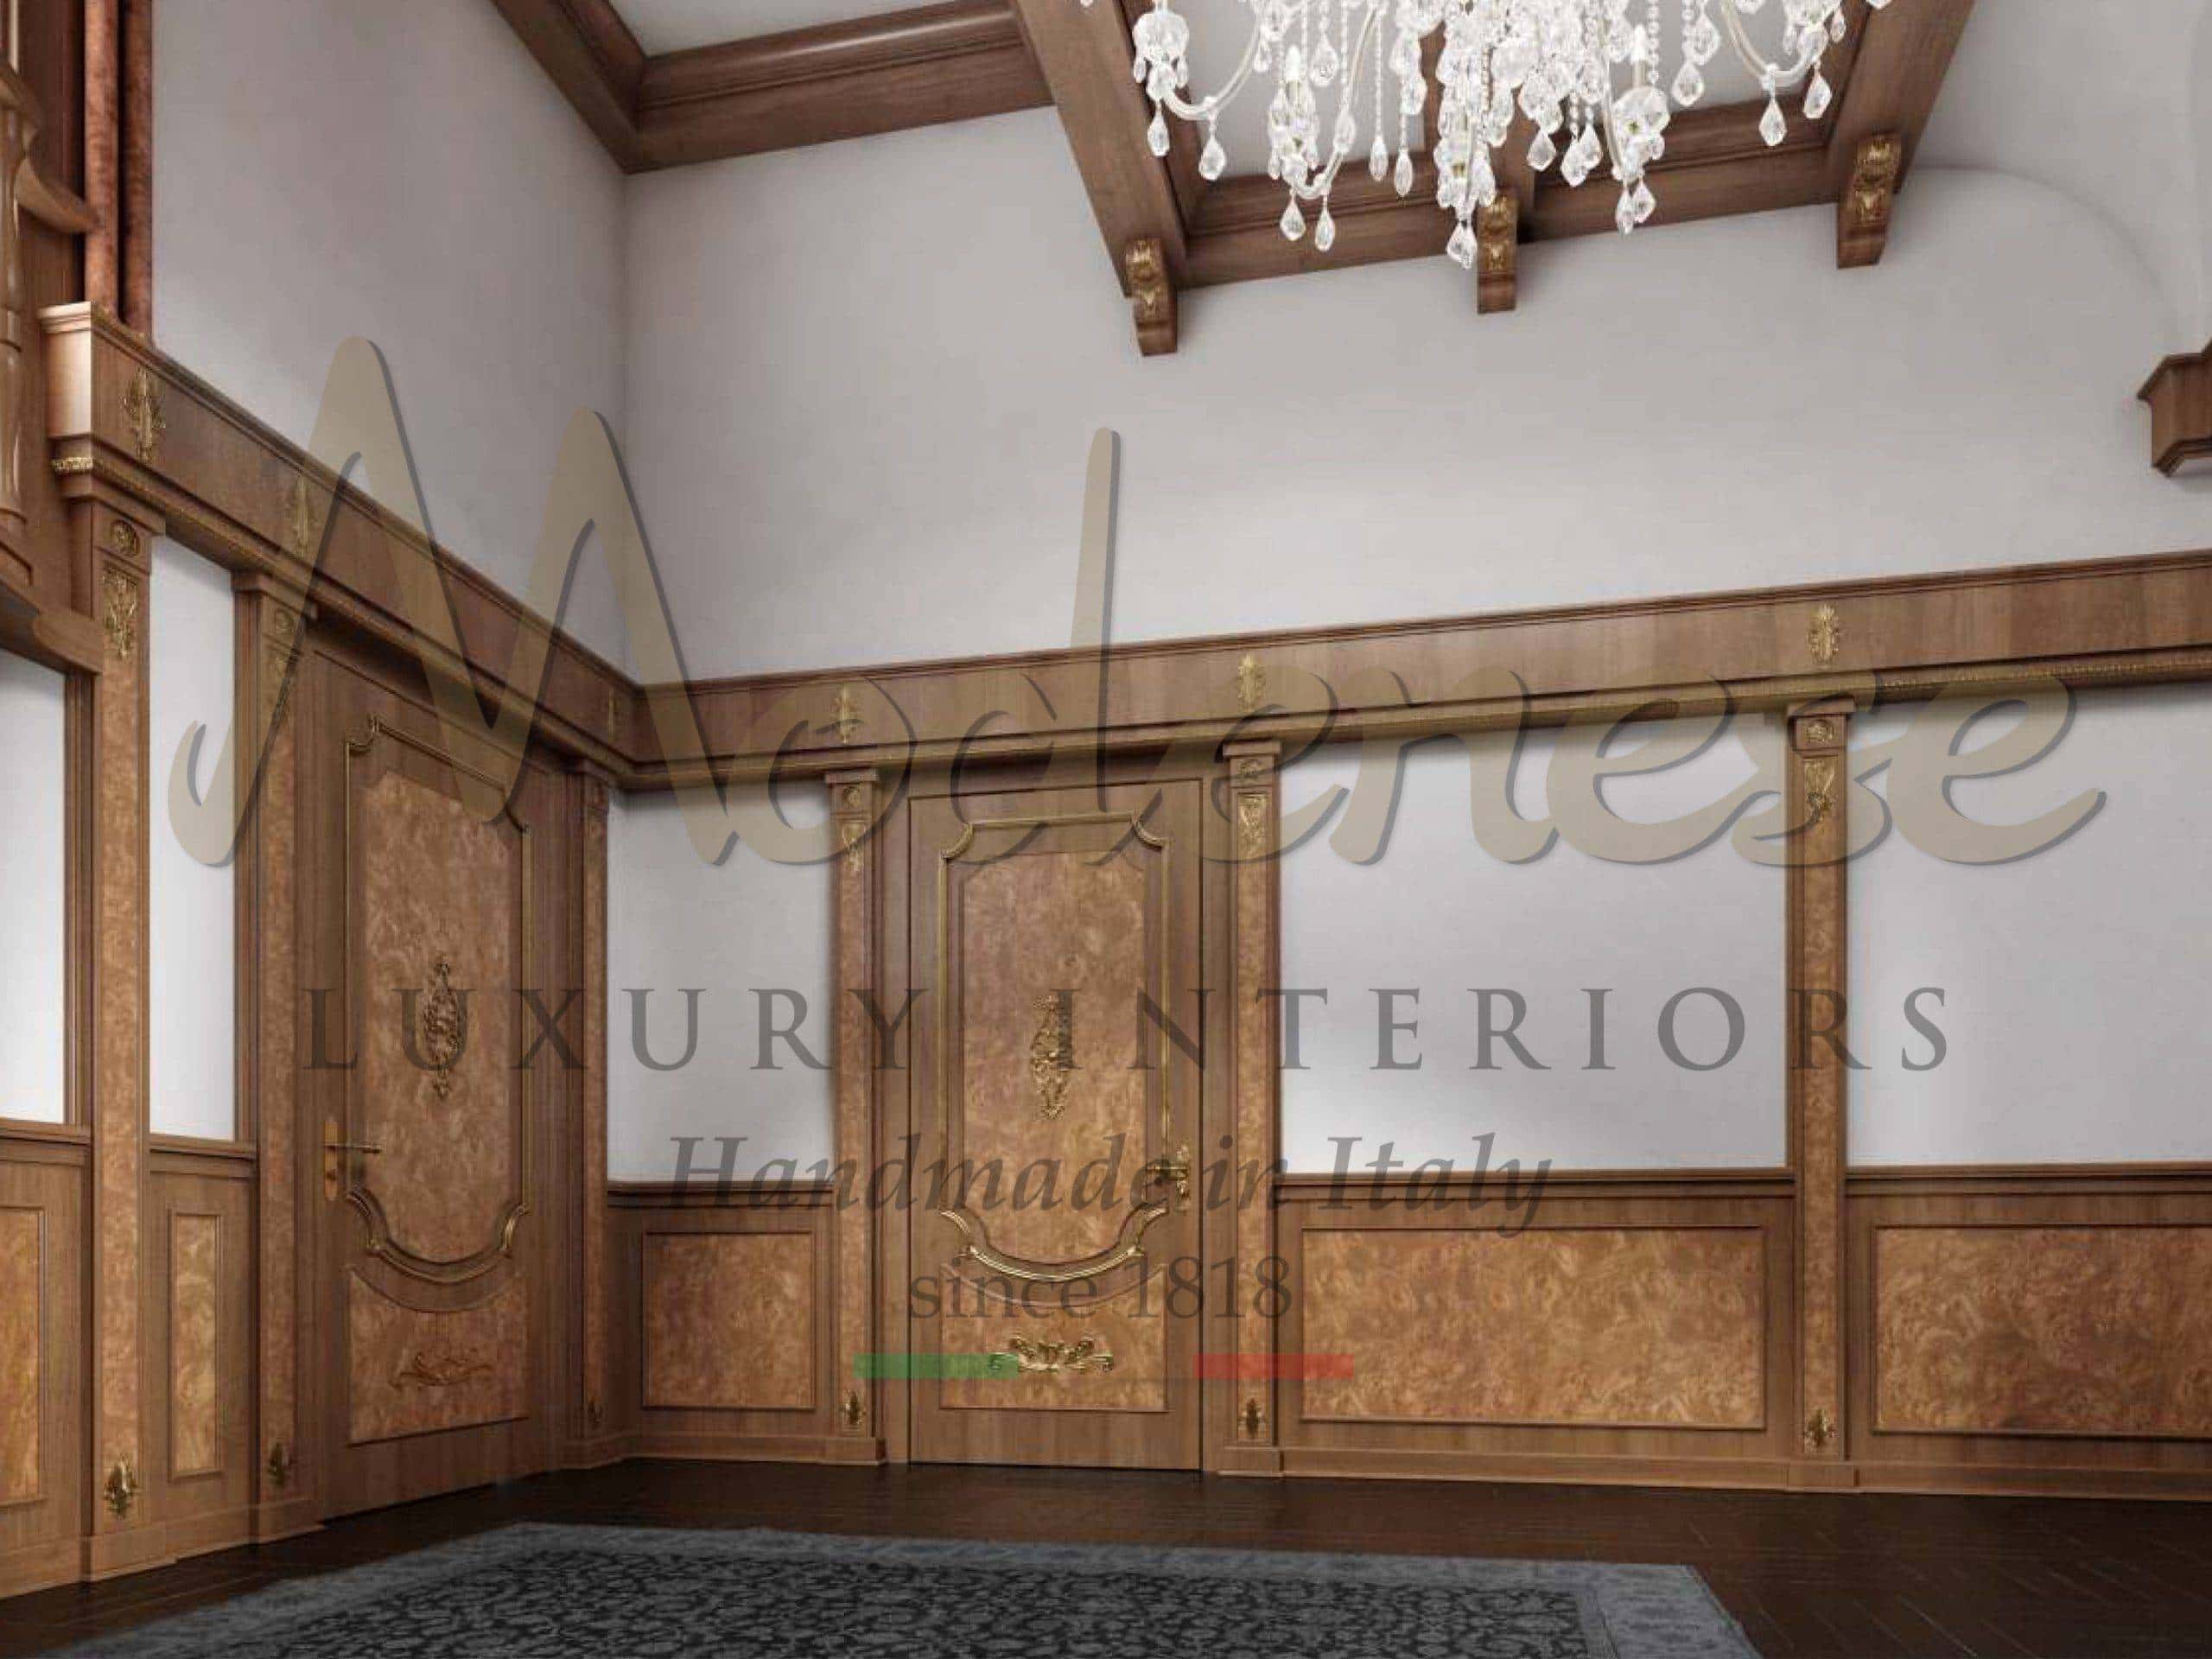 classique traditionnel en bois massif raffiné opulent fabriqué en Italie lambris sur mesure décoration murale idéale meilleures solutions pour les projets de décoration intérieure des villas et palais royaux exclusifs